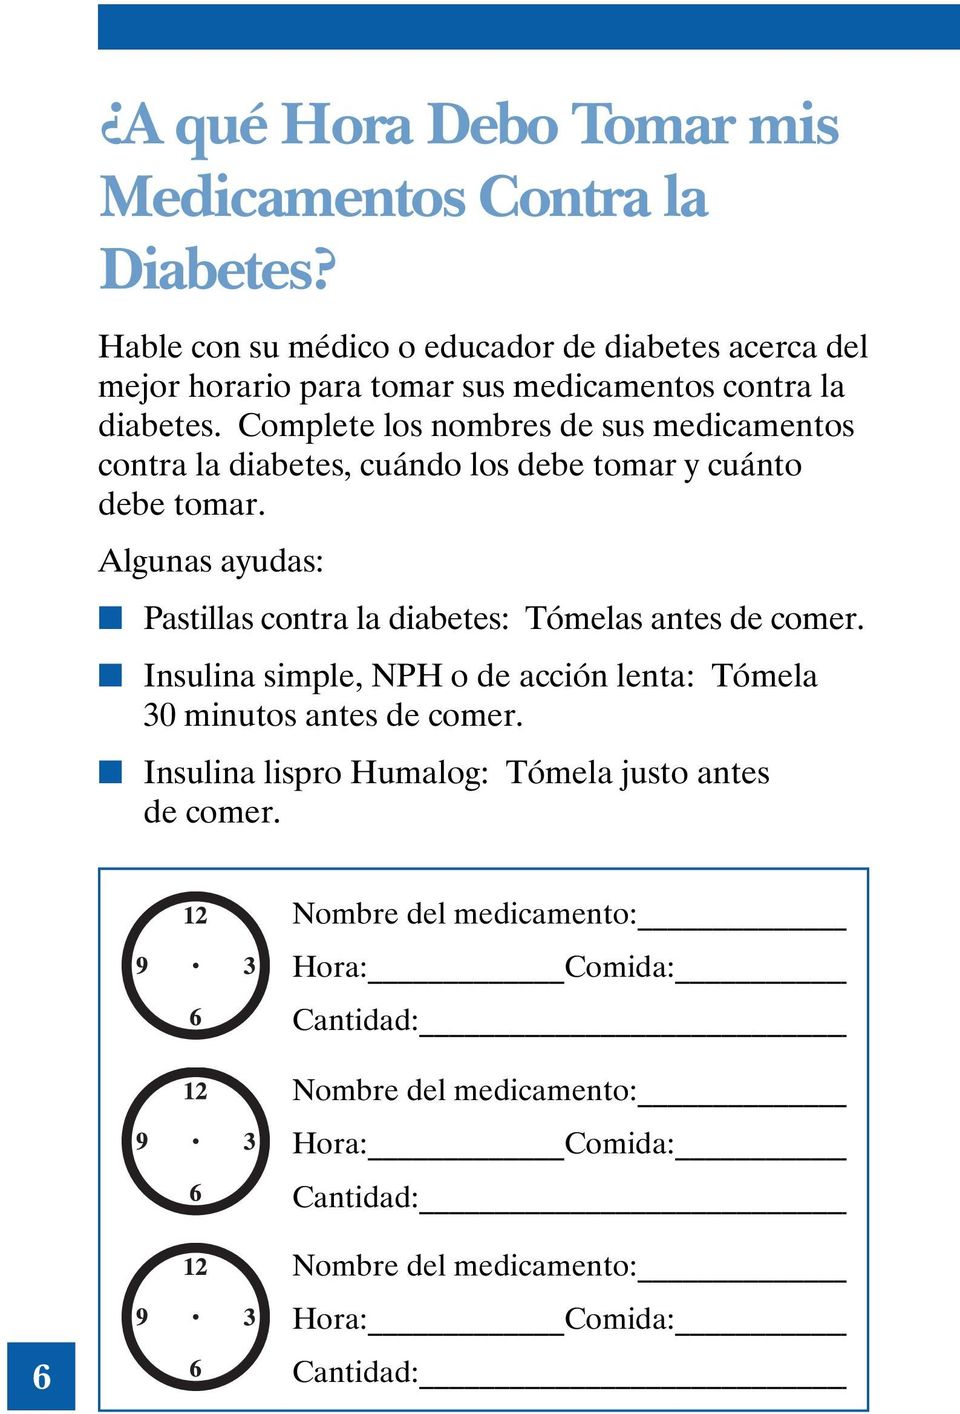 Complete los nombres de sus medicamentos contra la diabetes, cuándo los debe tomar y cuánto debe tomar.